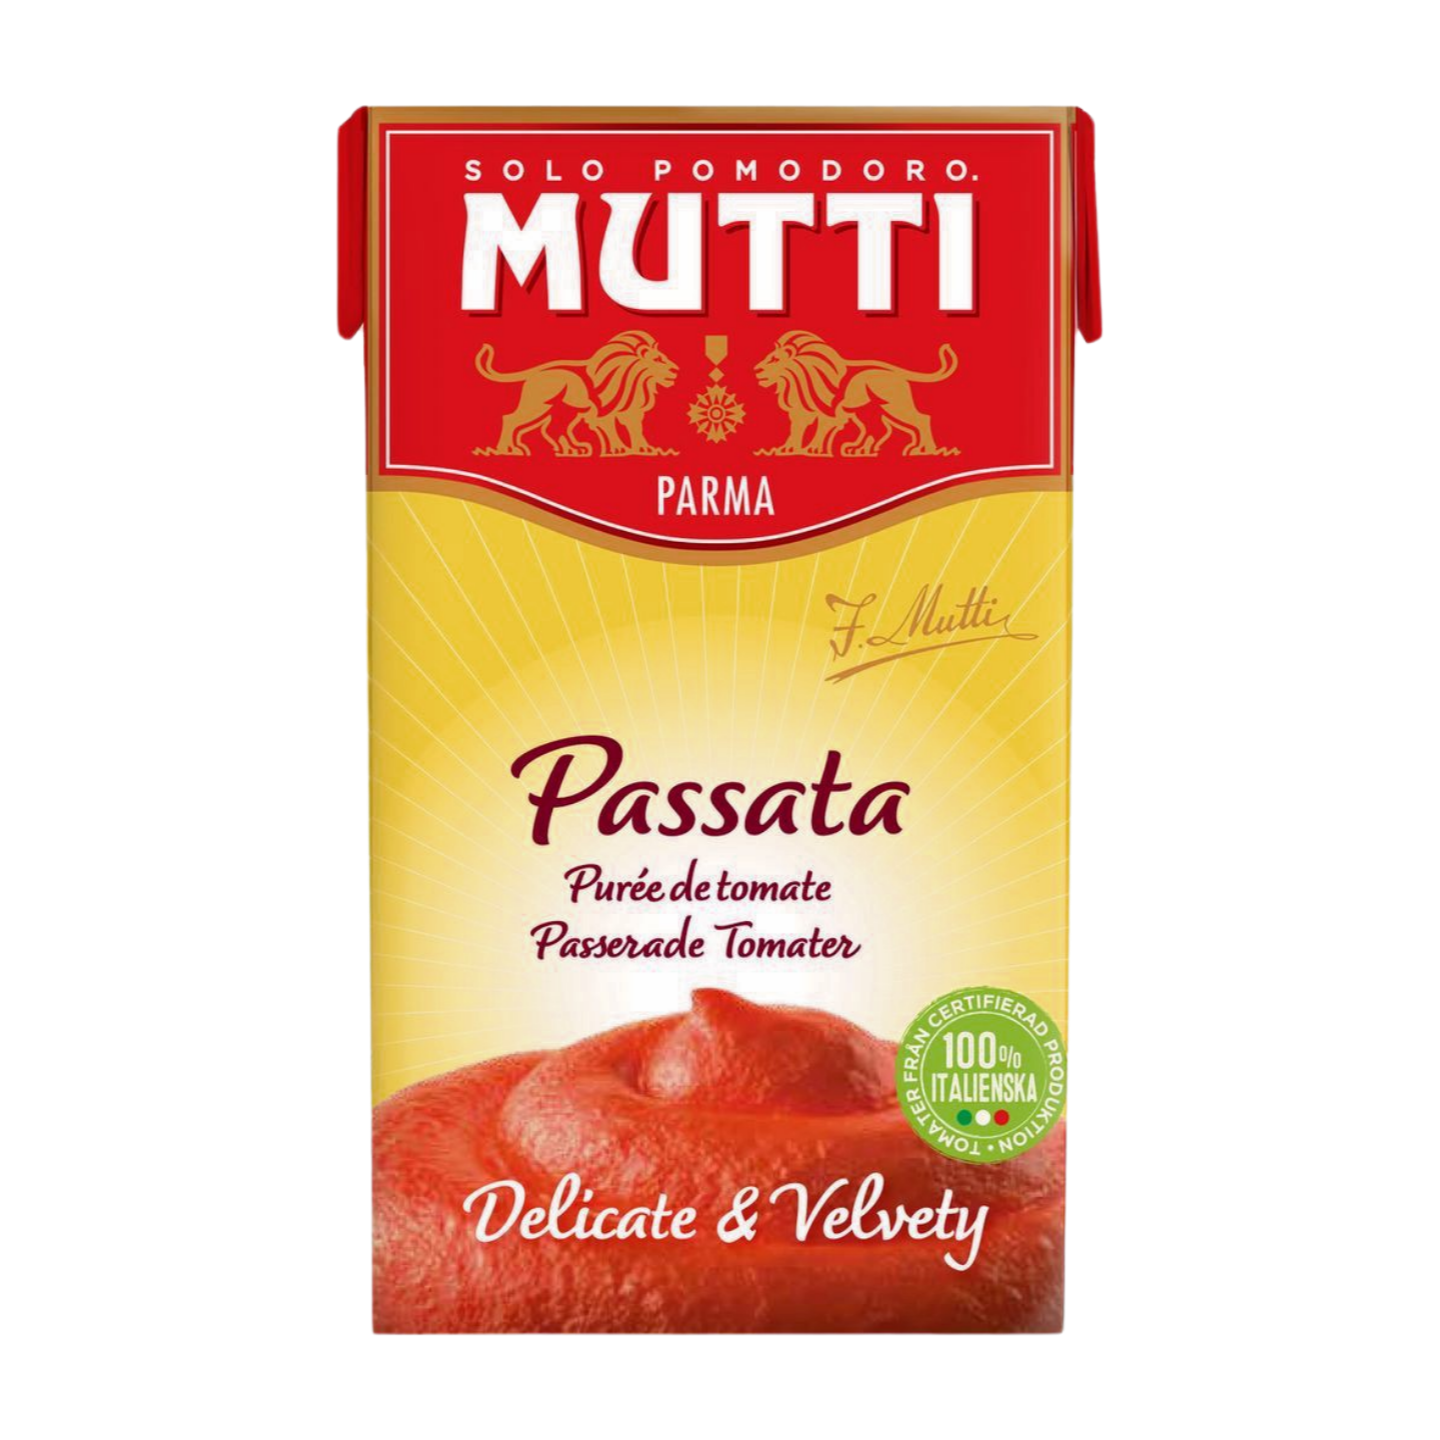 Mutti Passata in Carton (500g)